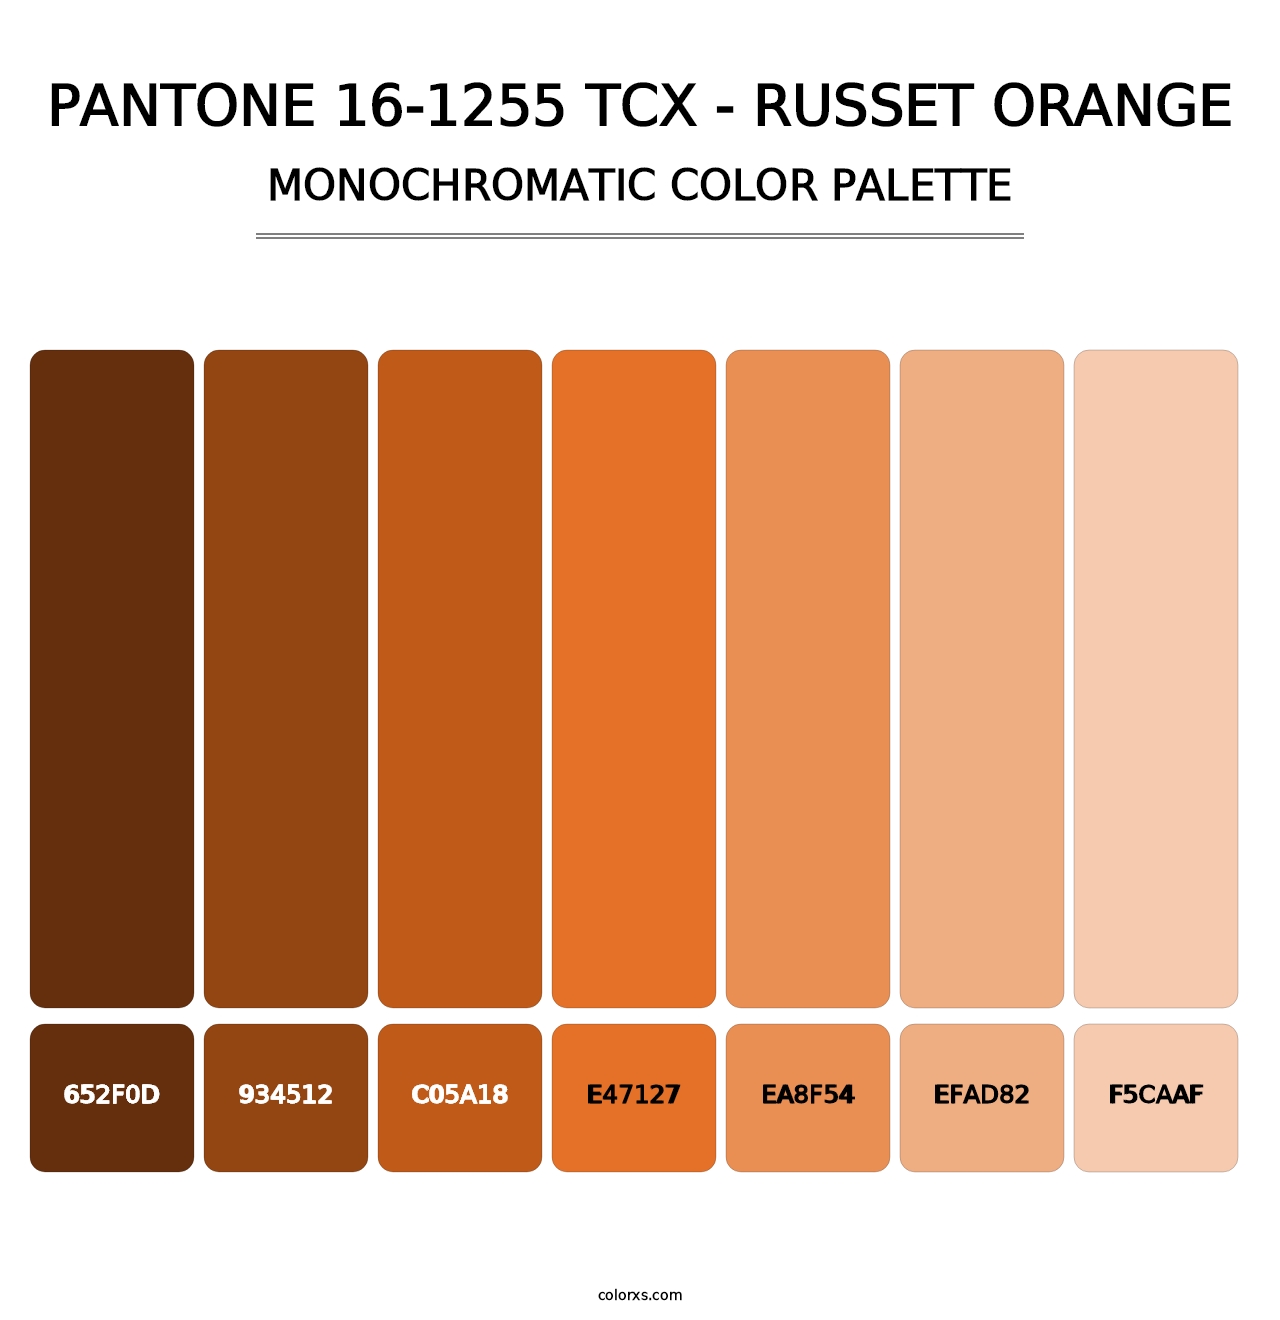 PANTONE 16-1255 TCX - Russet Orange - Monochromatic Color Palette